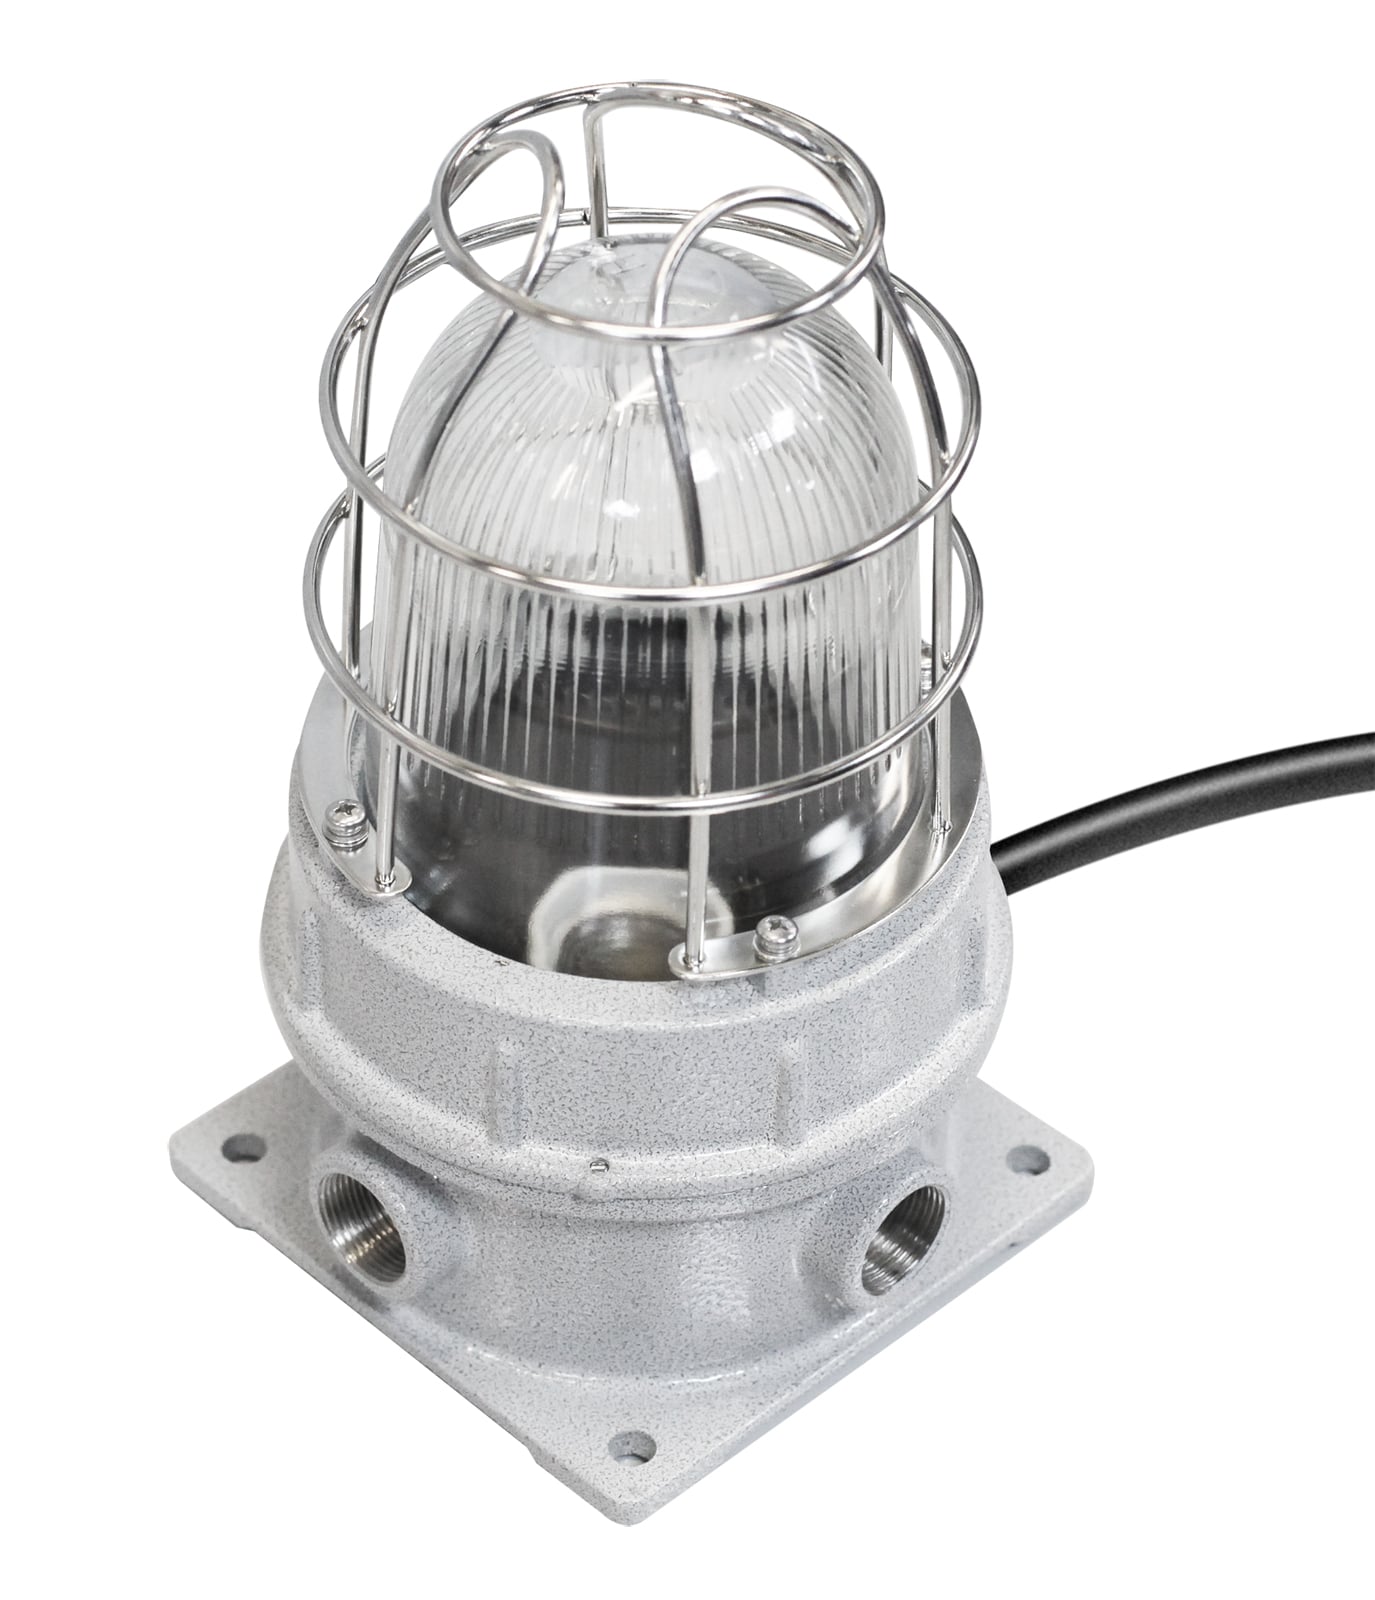 Светильники рудничные СГР01-М… для различных типов ламп с цоколем Е27 в корпусе из малоуглеродистой стали